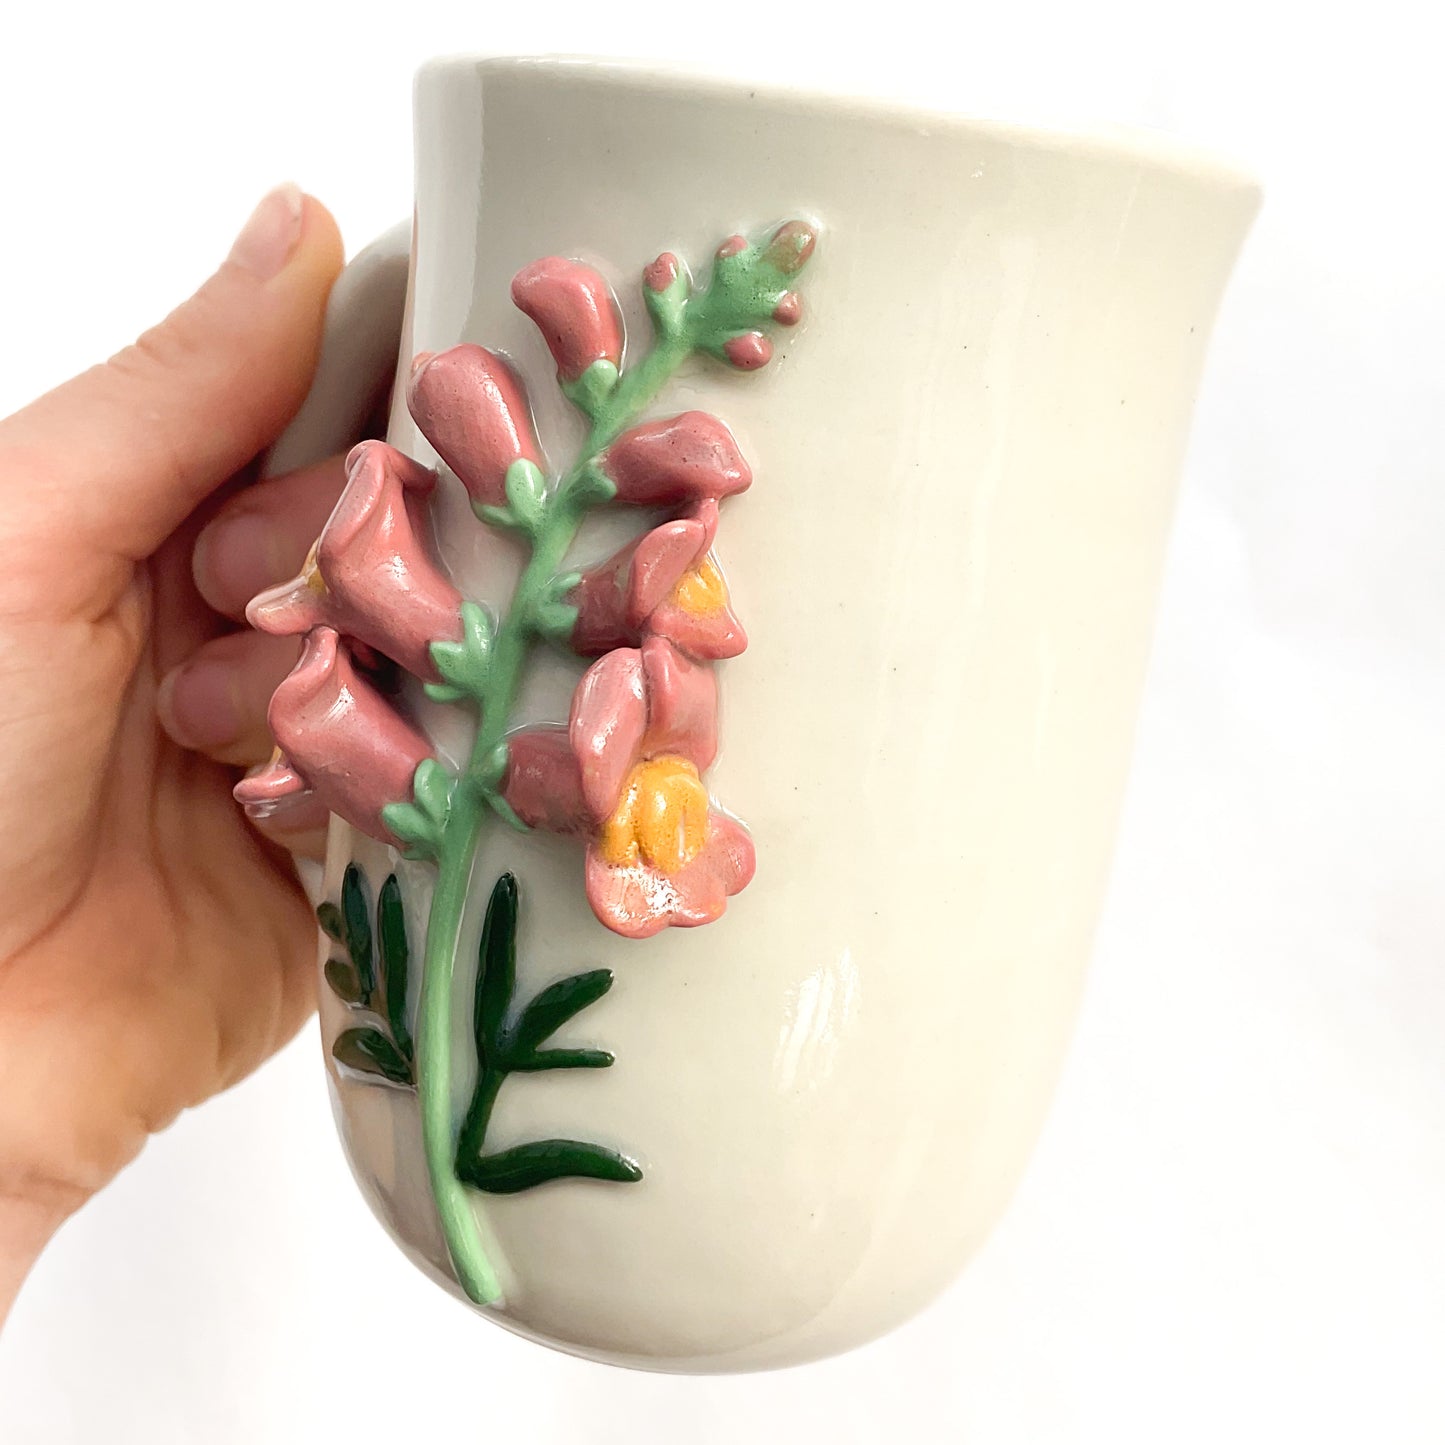 Snapdragon Hand Sculpted Porcelain Mug 10 oz